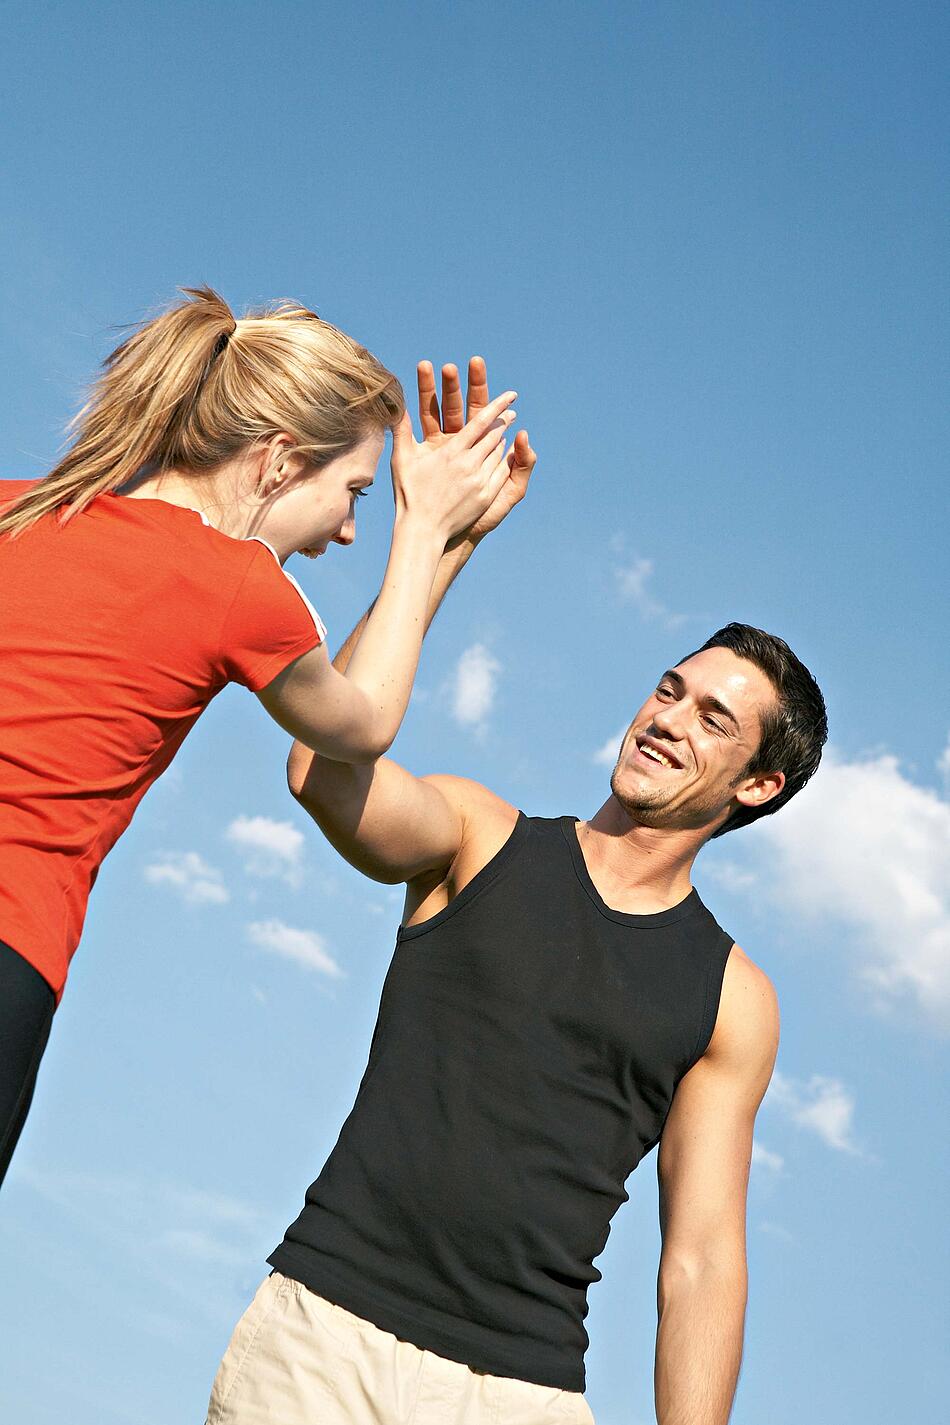 Frau und Mann in Sportkleidung vor einem blauen Himmel beim High-Five-Abklatschen.